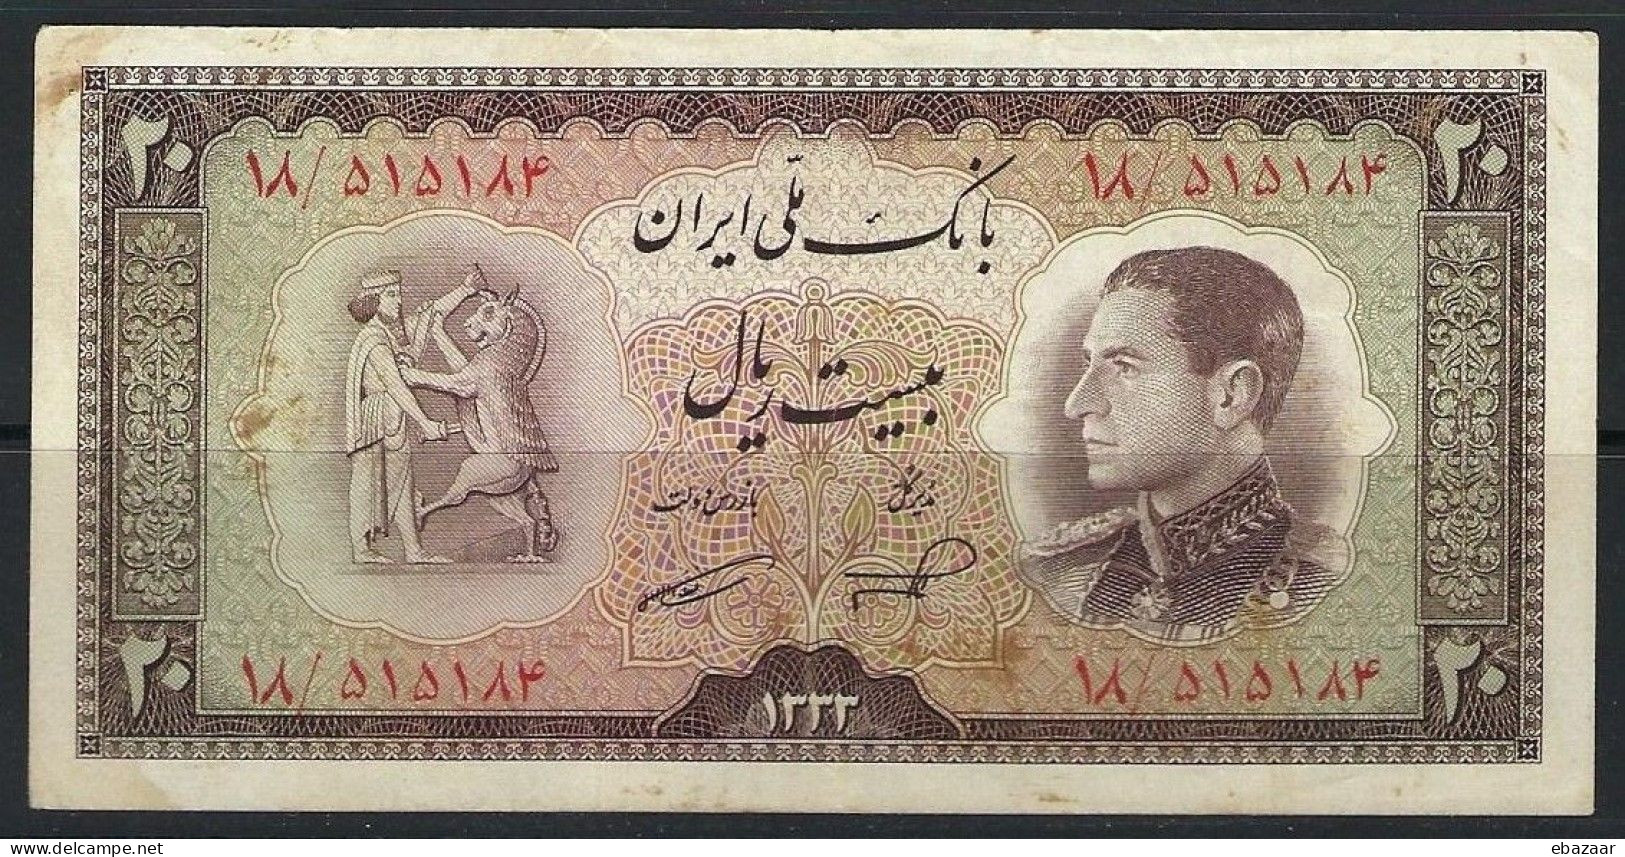 Iran Mohammad Reza Shah 1952 Banknote 20 Rials P-65, XF Circulated - Iran